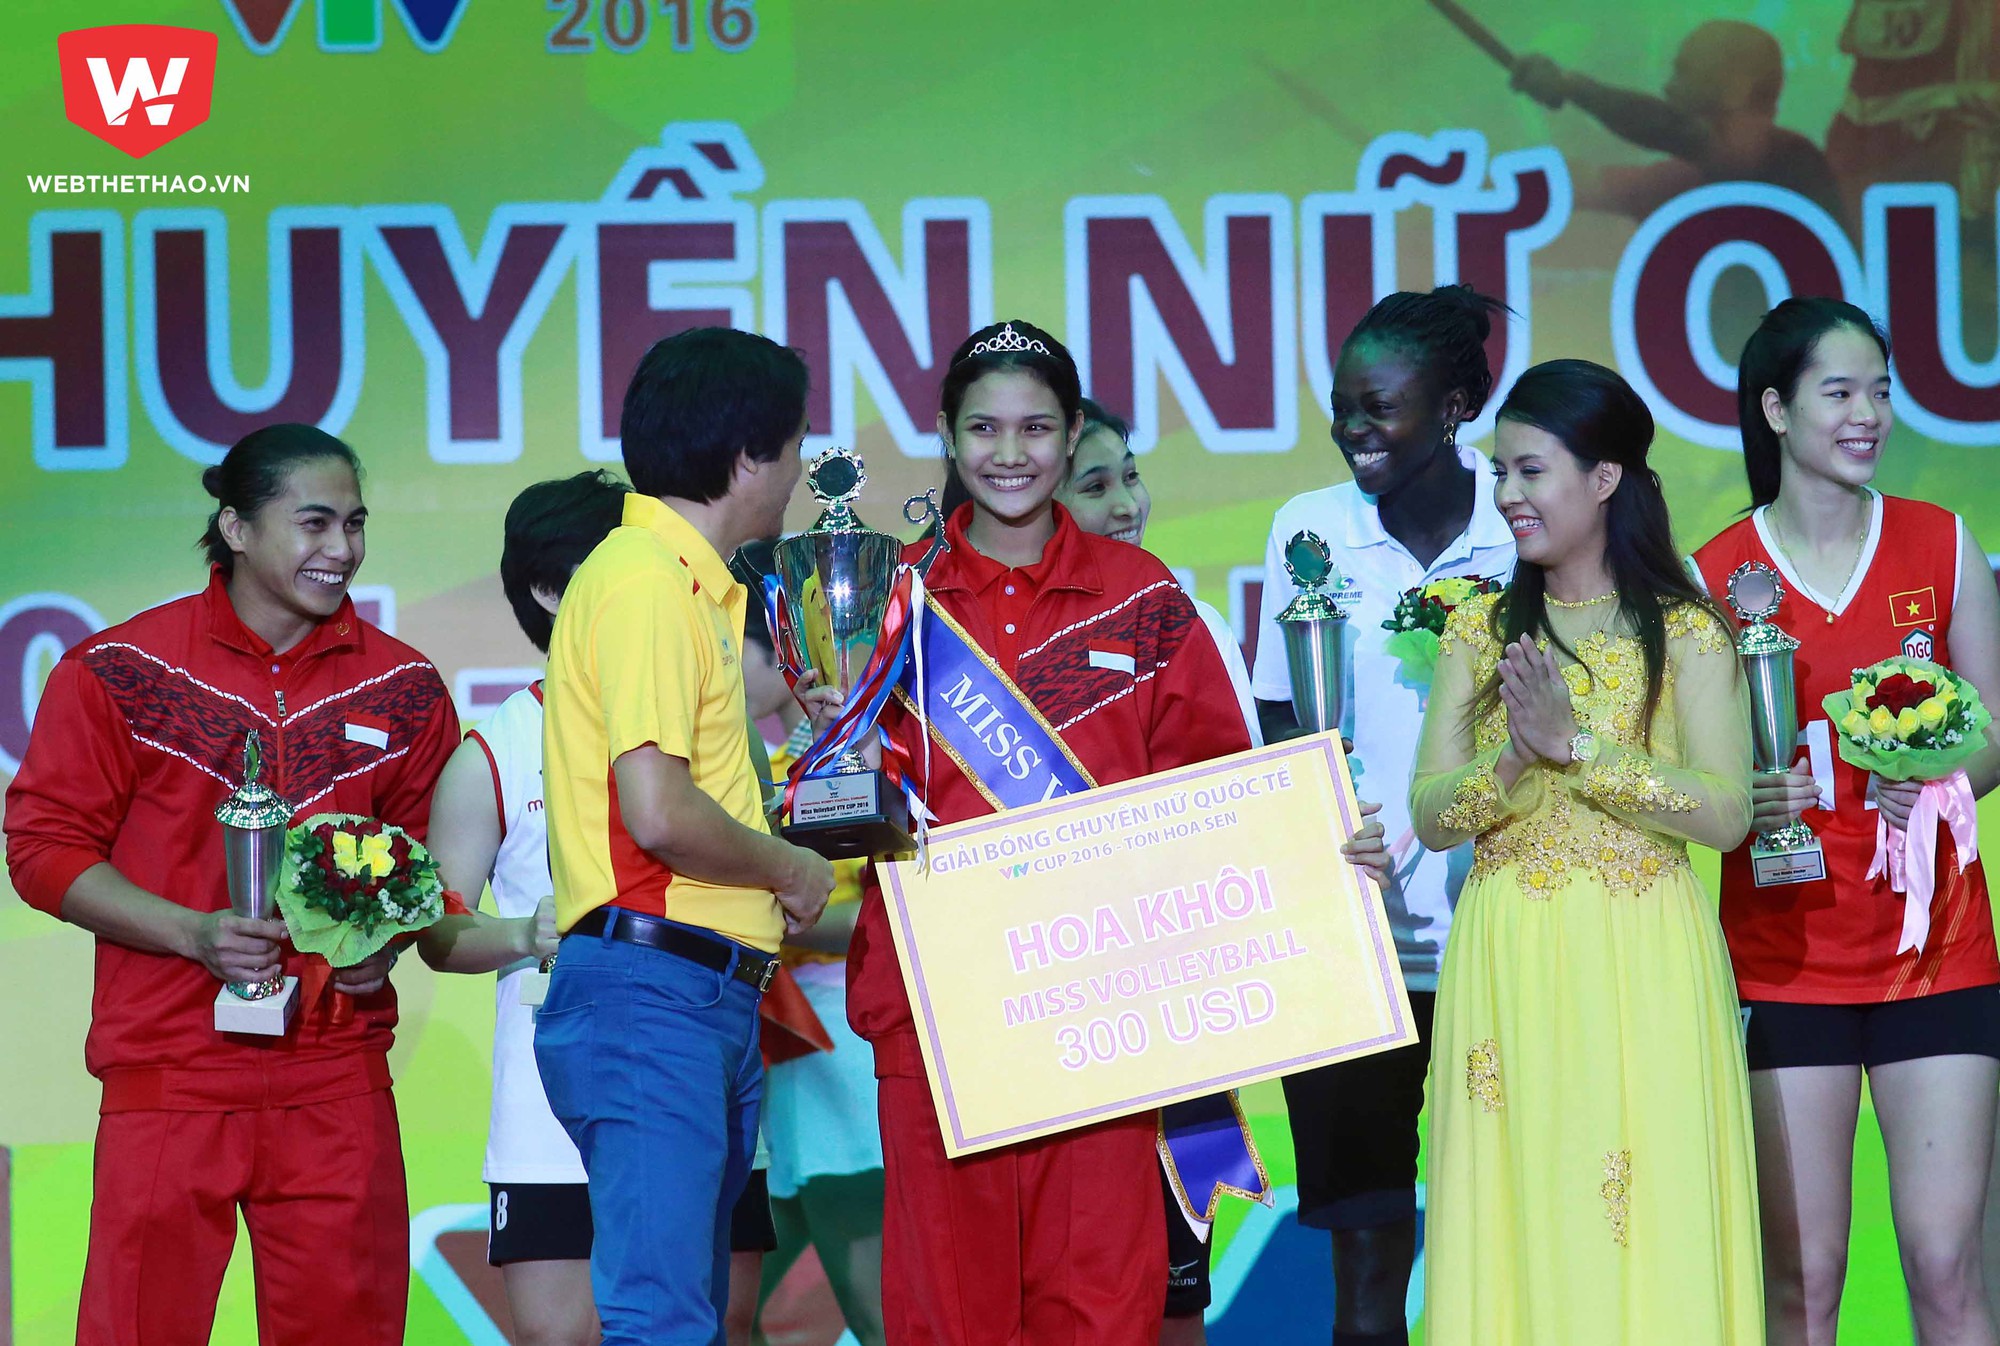 Susikawati nhận vương miện và số tiền tưởng 300 USD cho danh hiệu Miss VTV 2016. Ảnh: Hải Đăng.